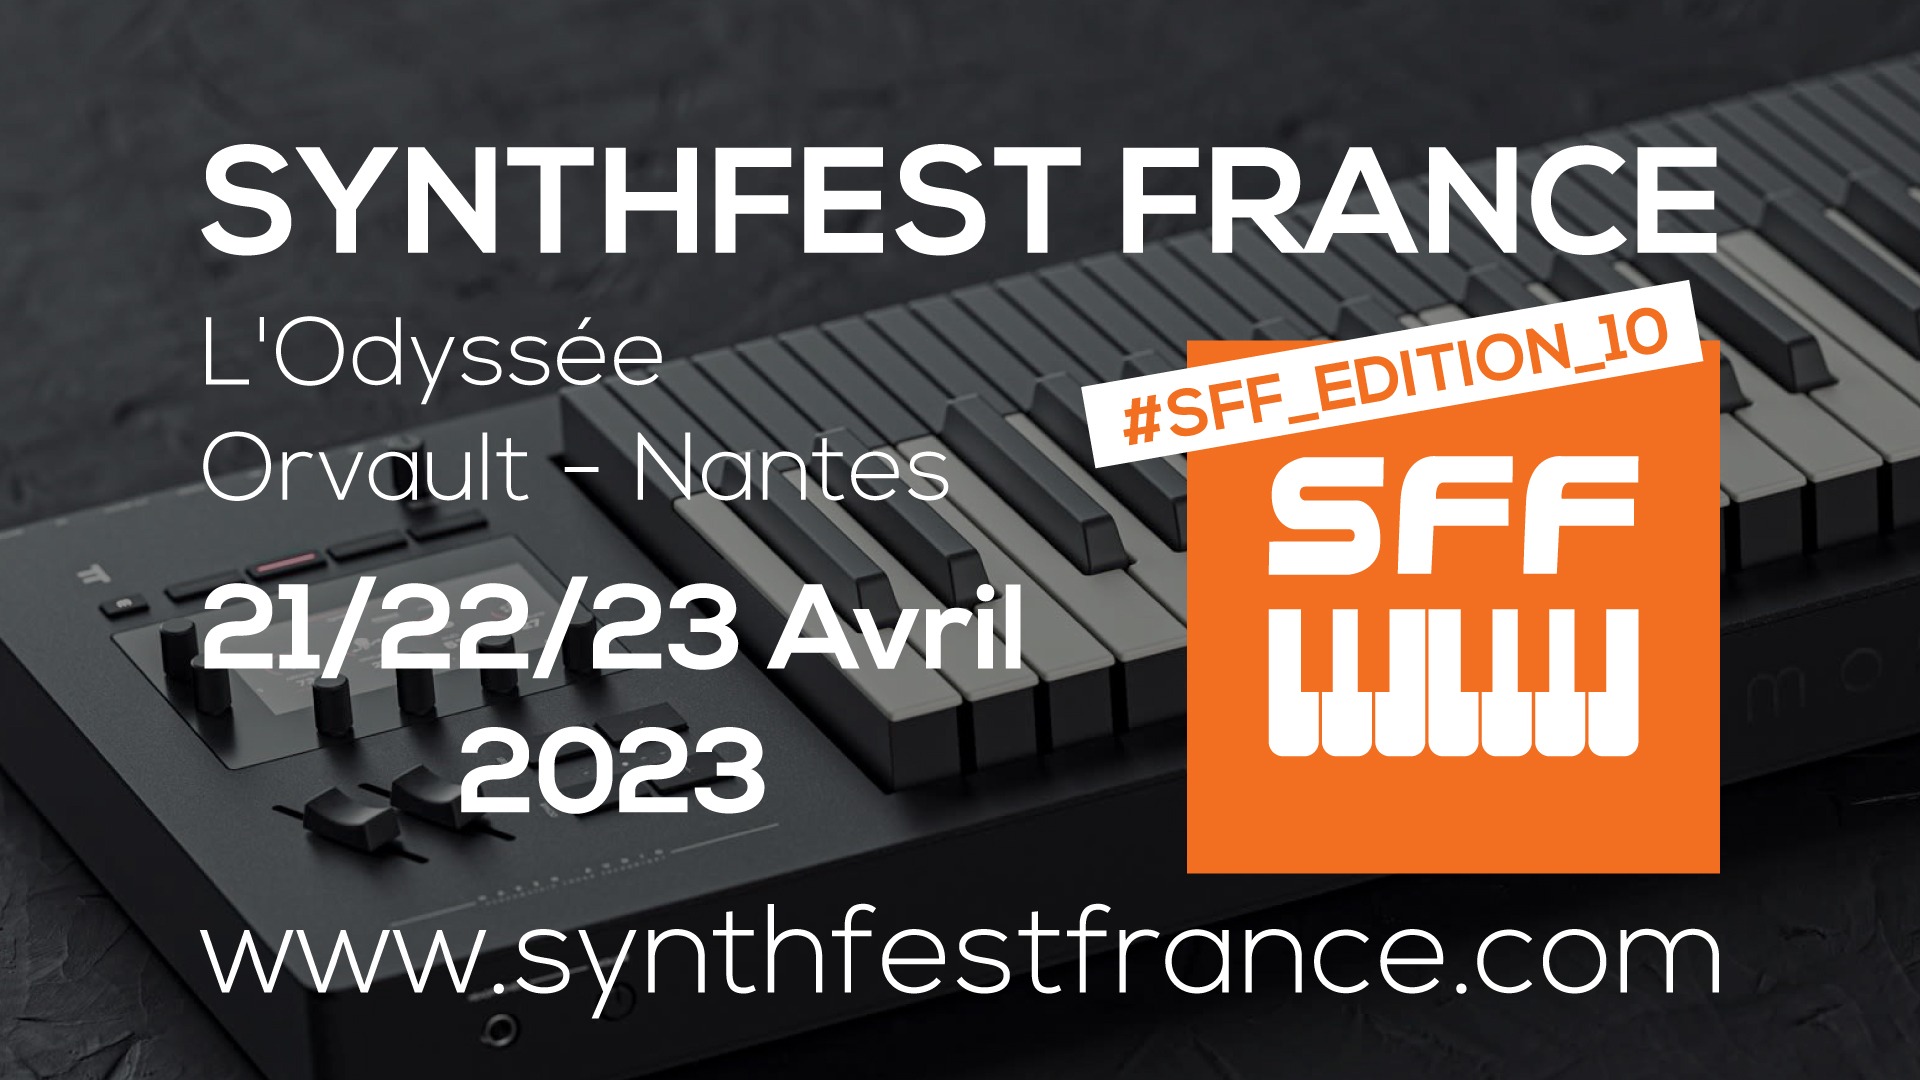 SynthFest France 2023 #SFF_EDITION_10 #SACEM #UNAC #KRHomeStudio #ALGAM #LesSondiers